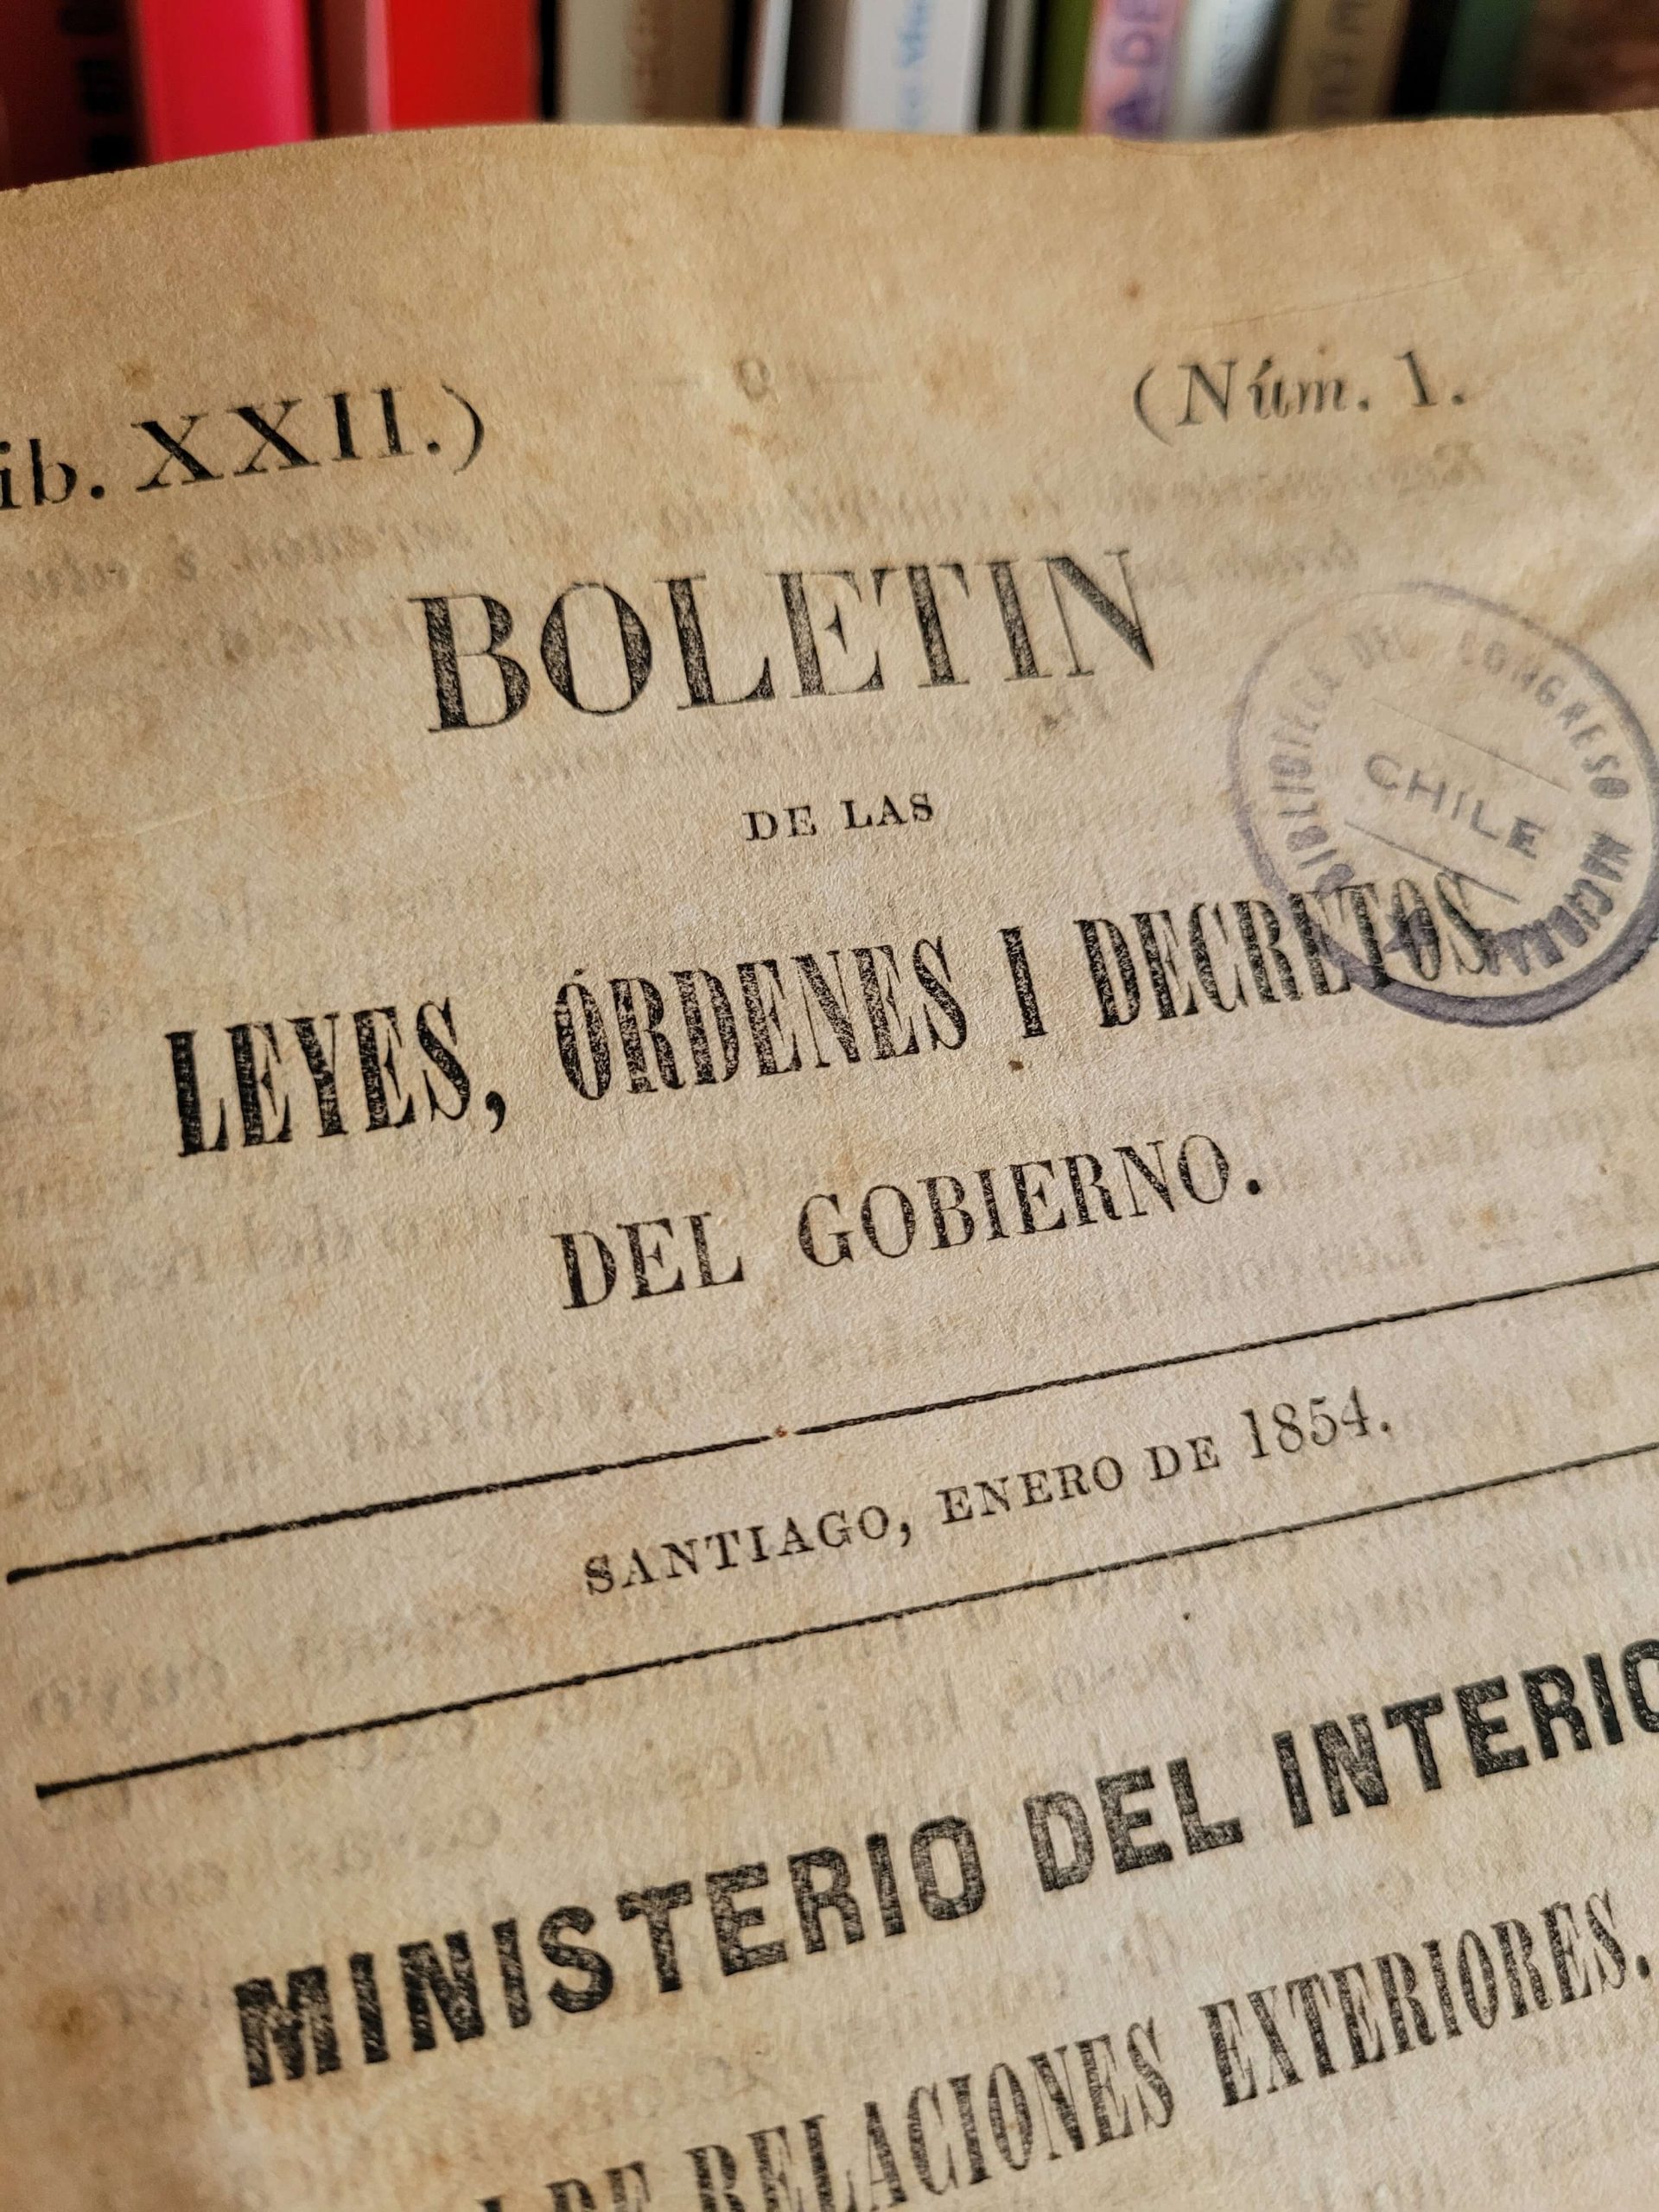 Boletín de las leyes, órdenes, i decretos del gobierno (1854) (Ministerio del Interior de Chile)